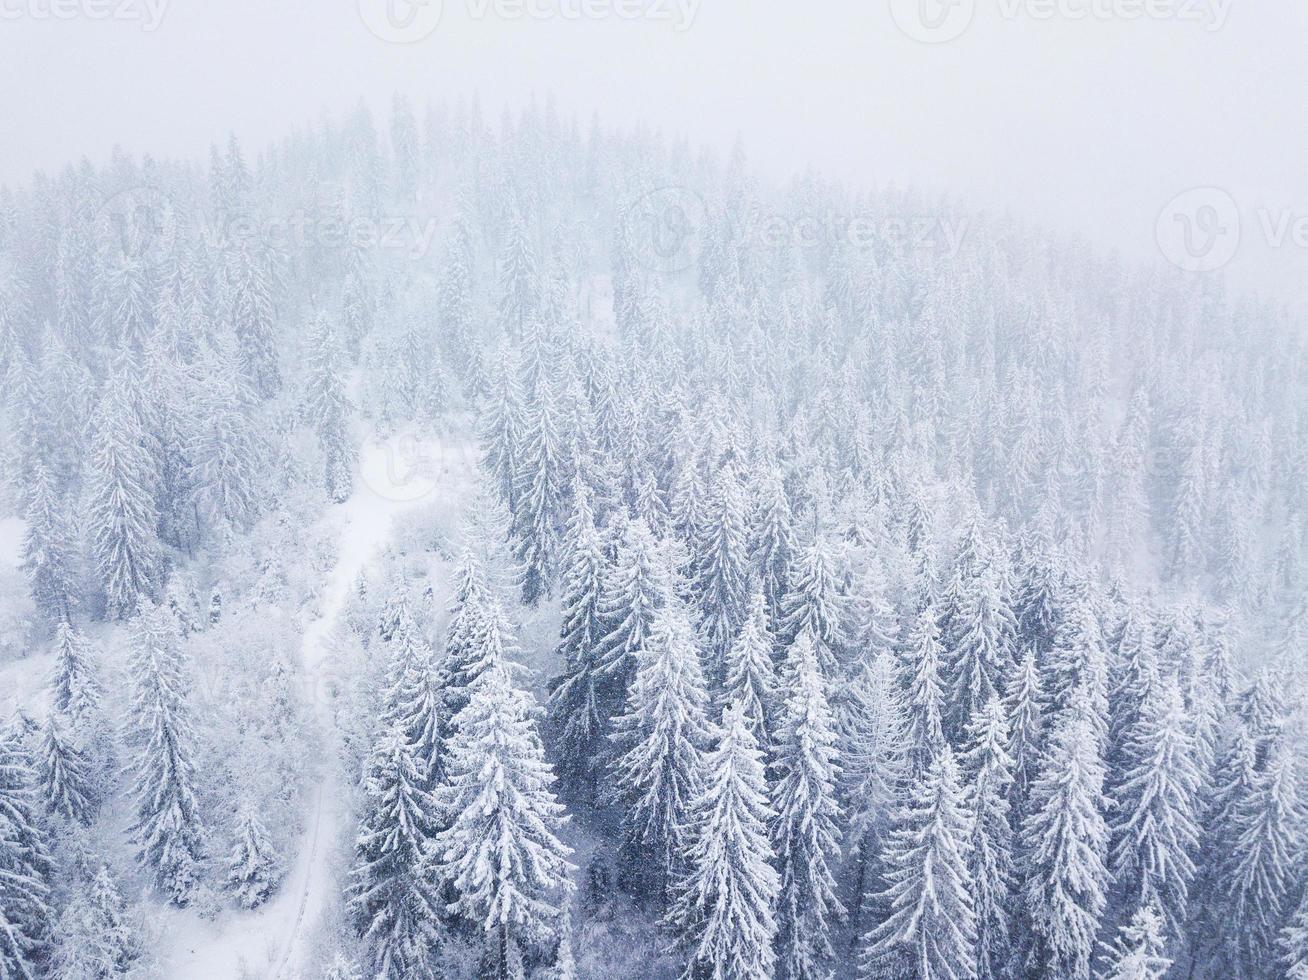 Flug Über Schneesturm im ein schneebedeckt Berg Nadelbaum Wald, unbequem unfreundlich Winter Wetter. foto